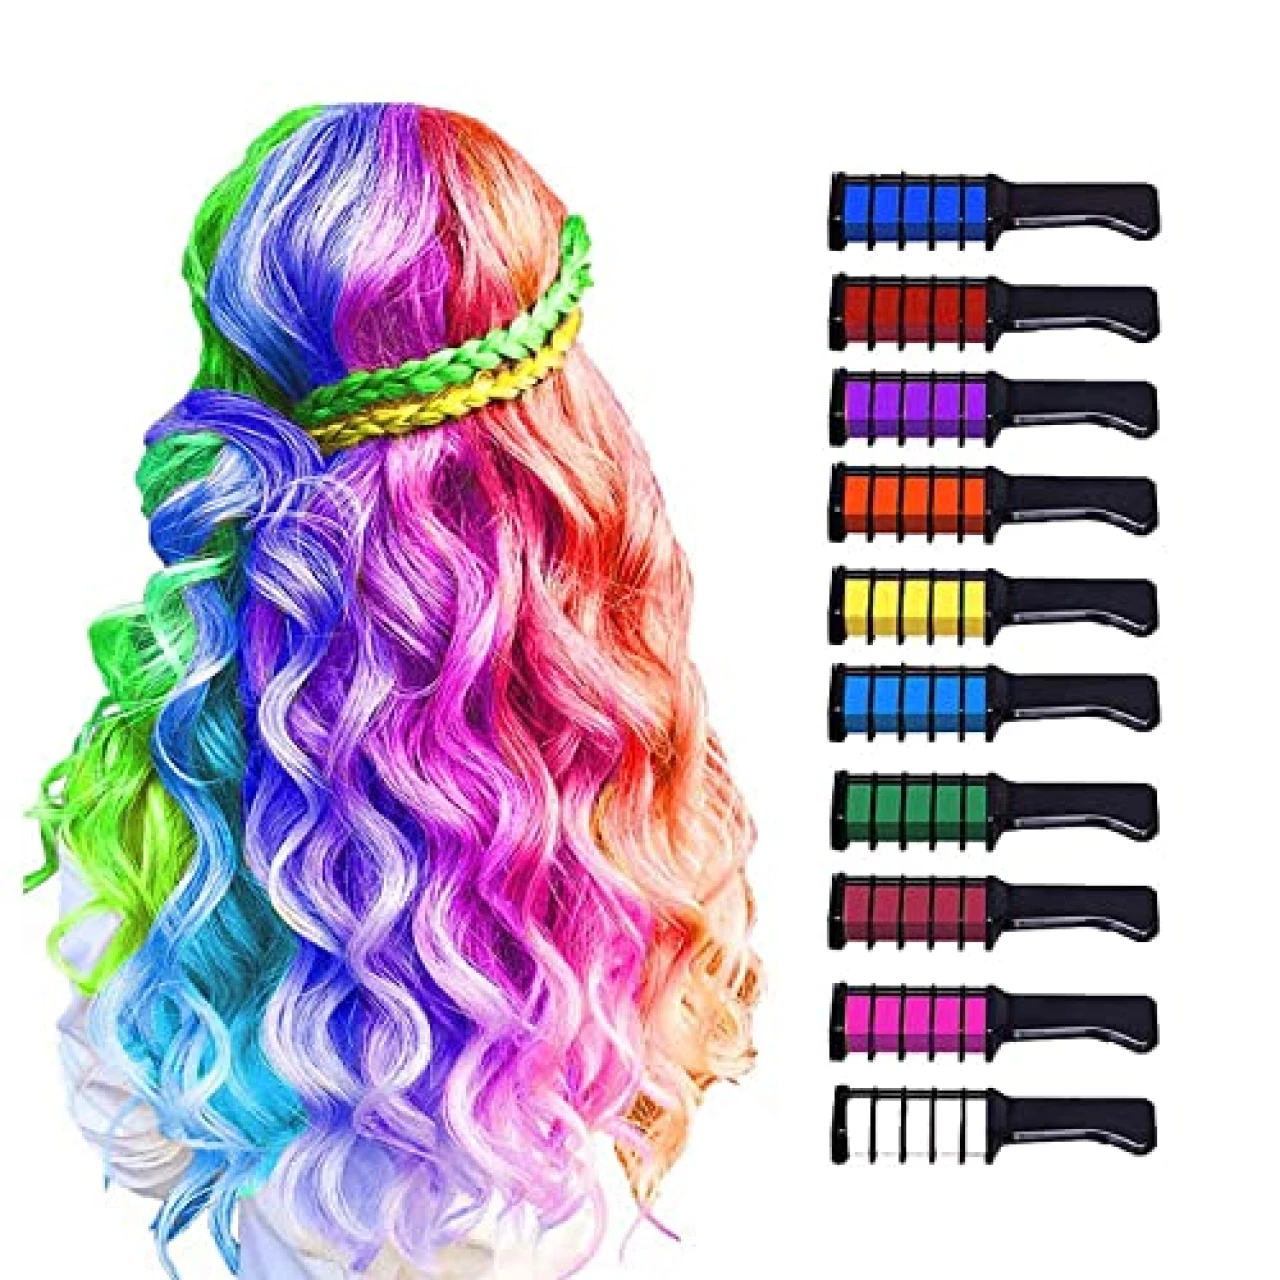 MSDADA 10 Color Hair Chalk for Girls Makeup Kit